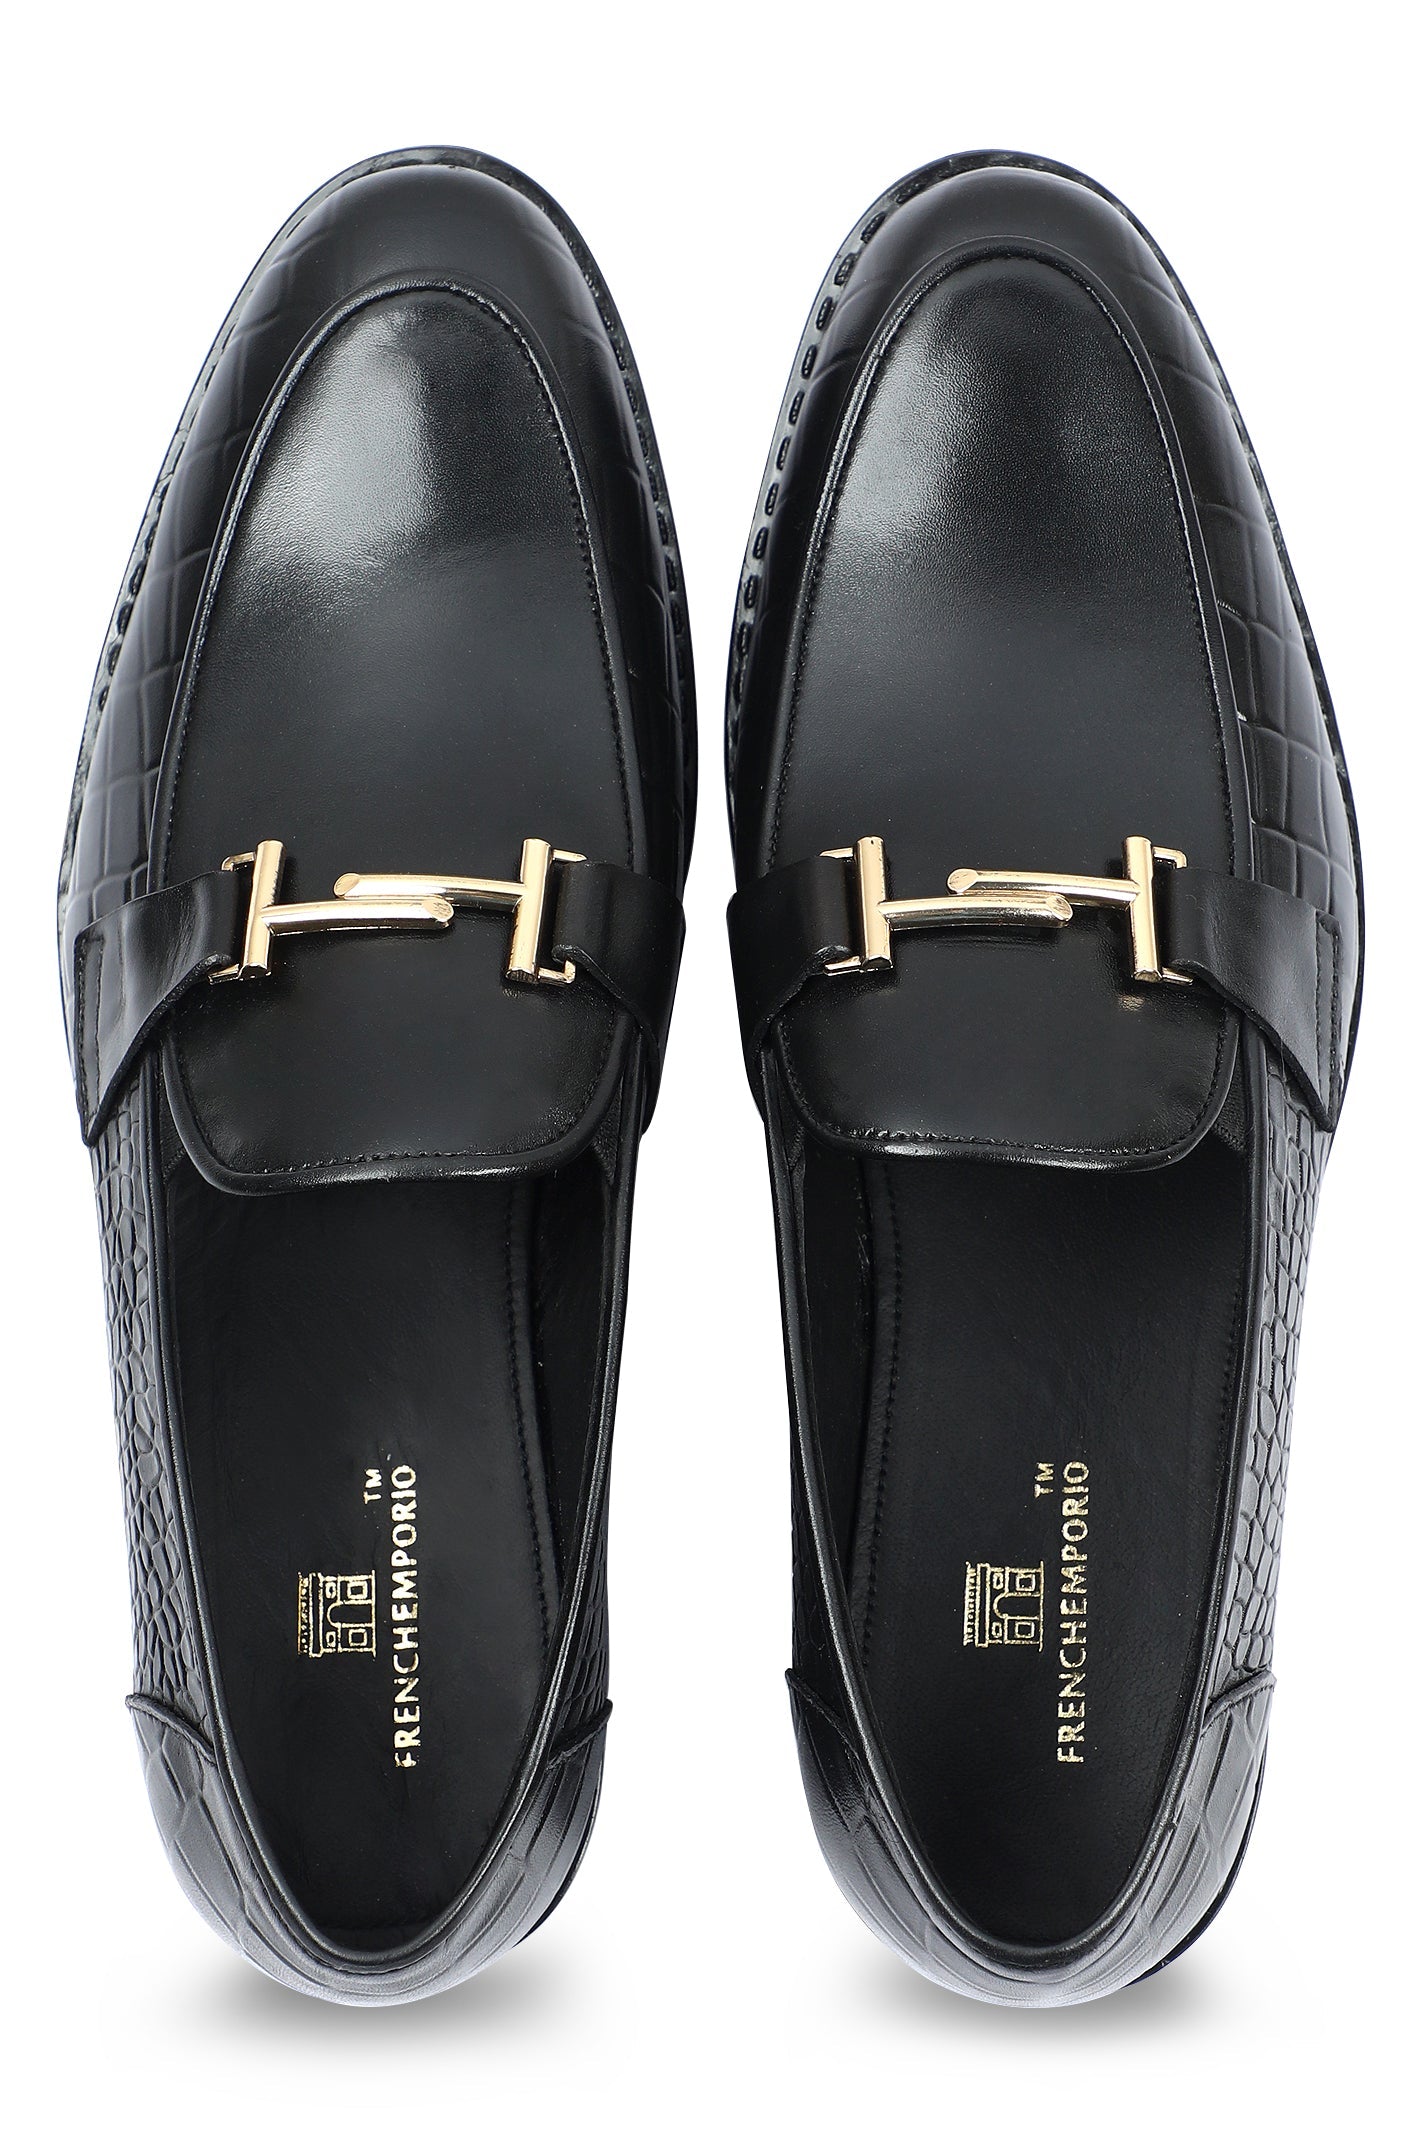 Formal Shoes For Men in Black SKU: SMF-0243-BLACK - Diners